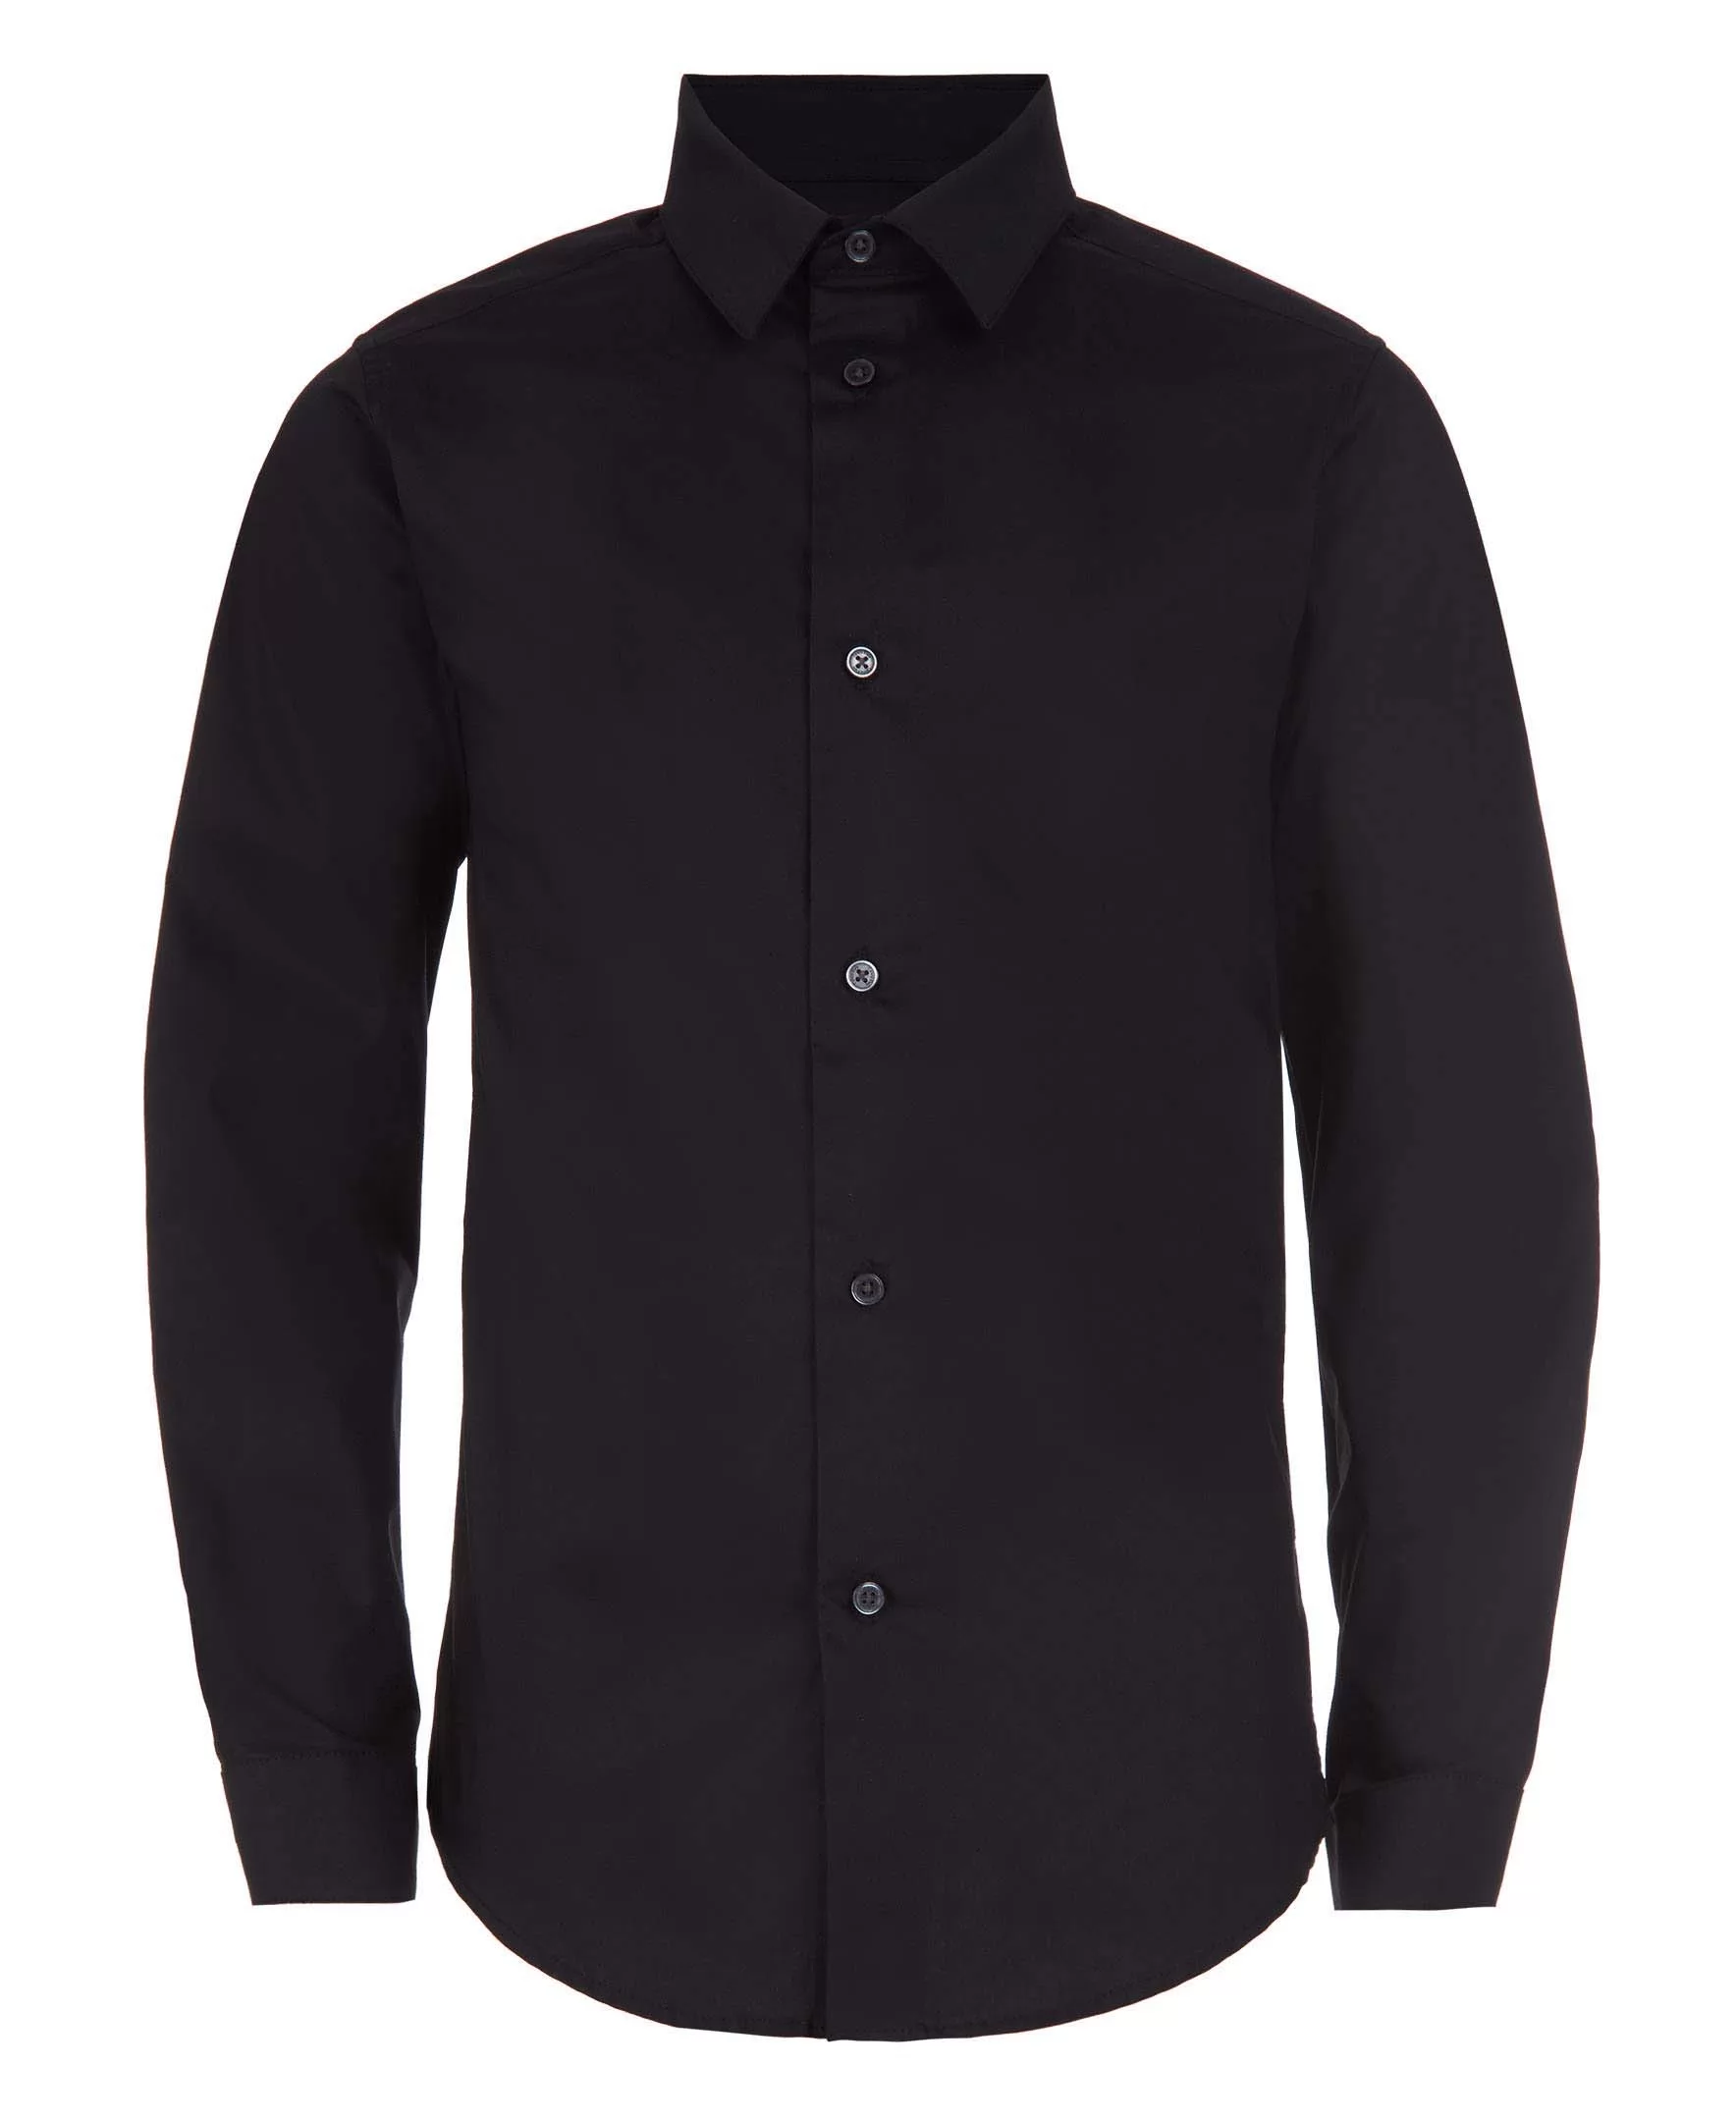 TCM Boys' Long Sleeve Shirt Solid Dress Shirt Slim Fit Button Down Tops Shirt